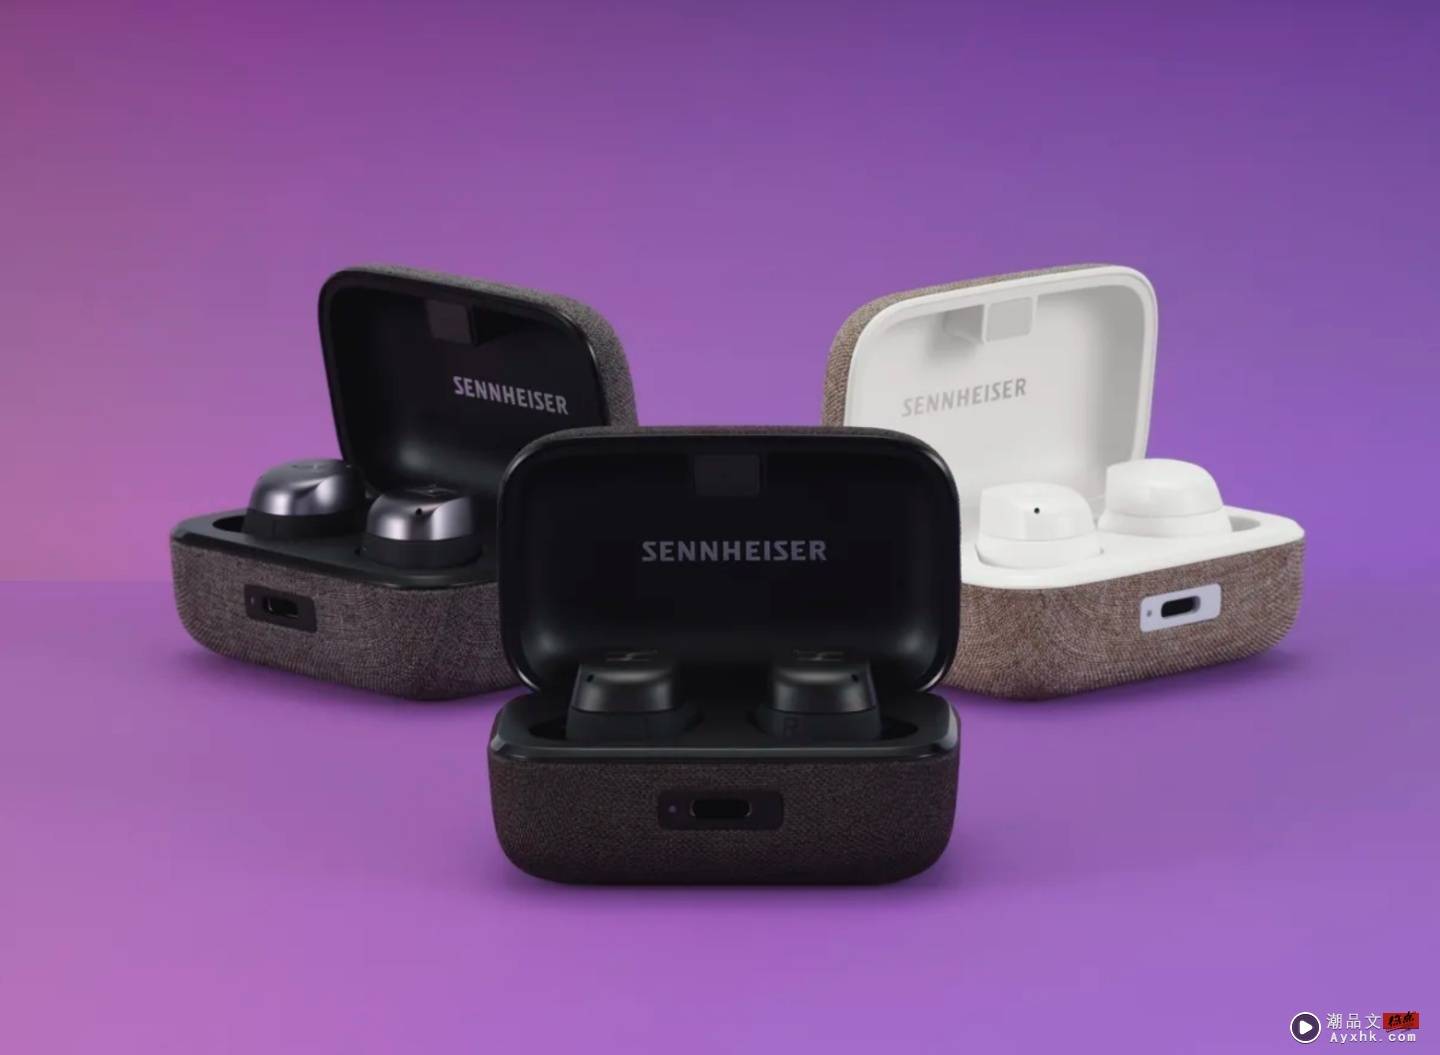 Sennheiser 真无线蓝牙耳机 Momentum True Wireless 3 亮相！外观采用新设计，加入自适应 ANC 技术和无线充电 数码科技 图1张